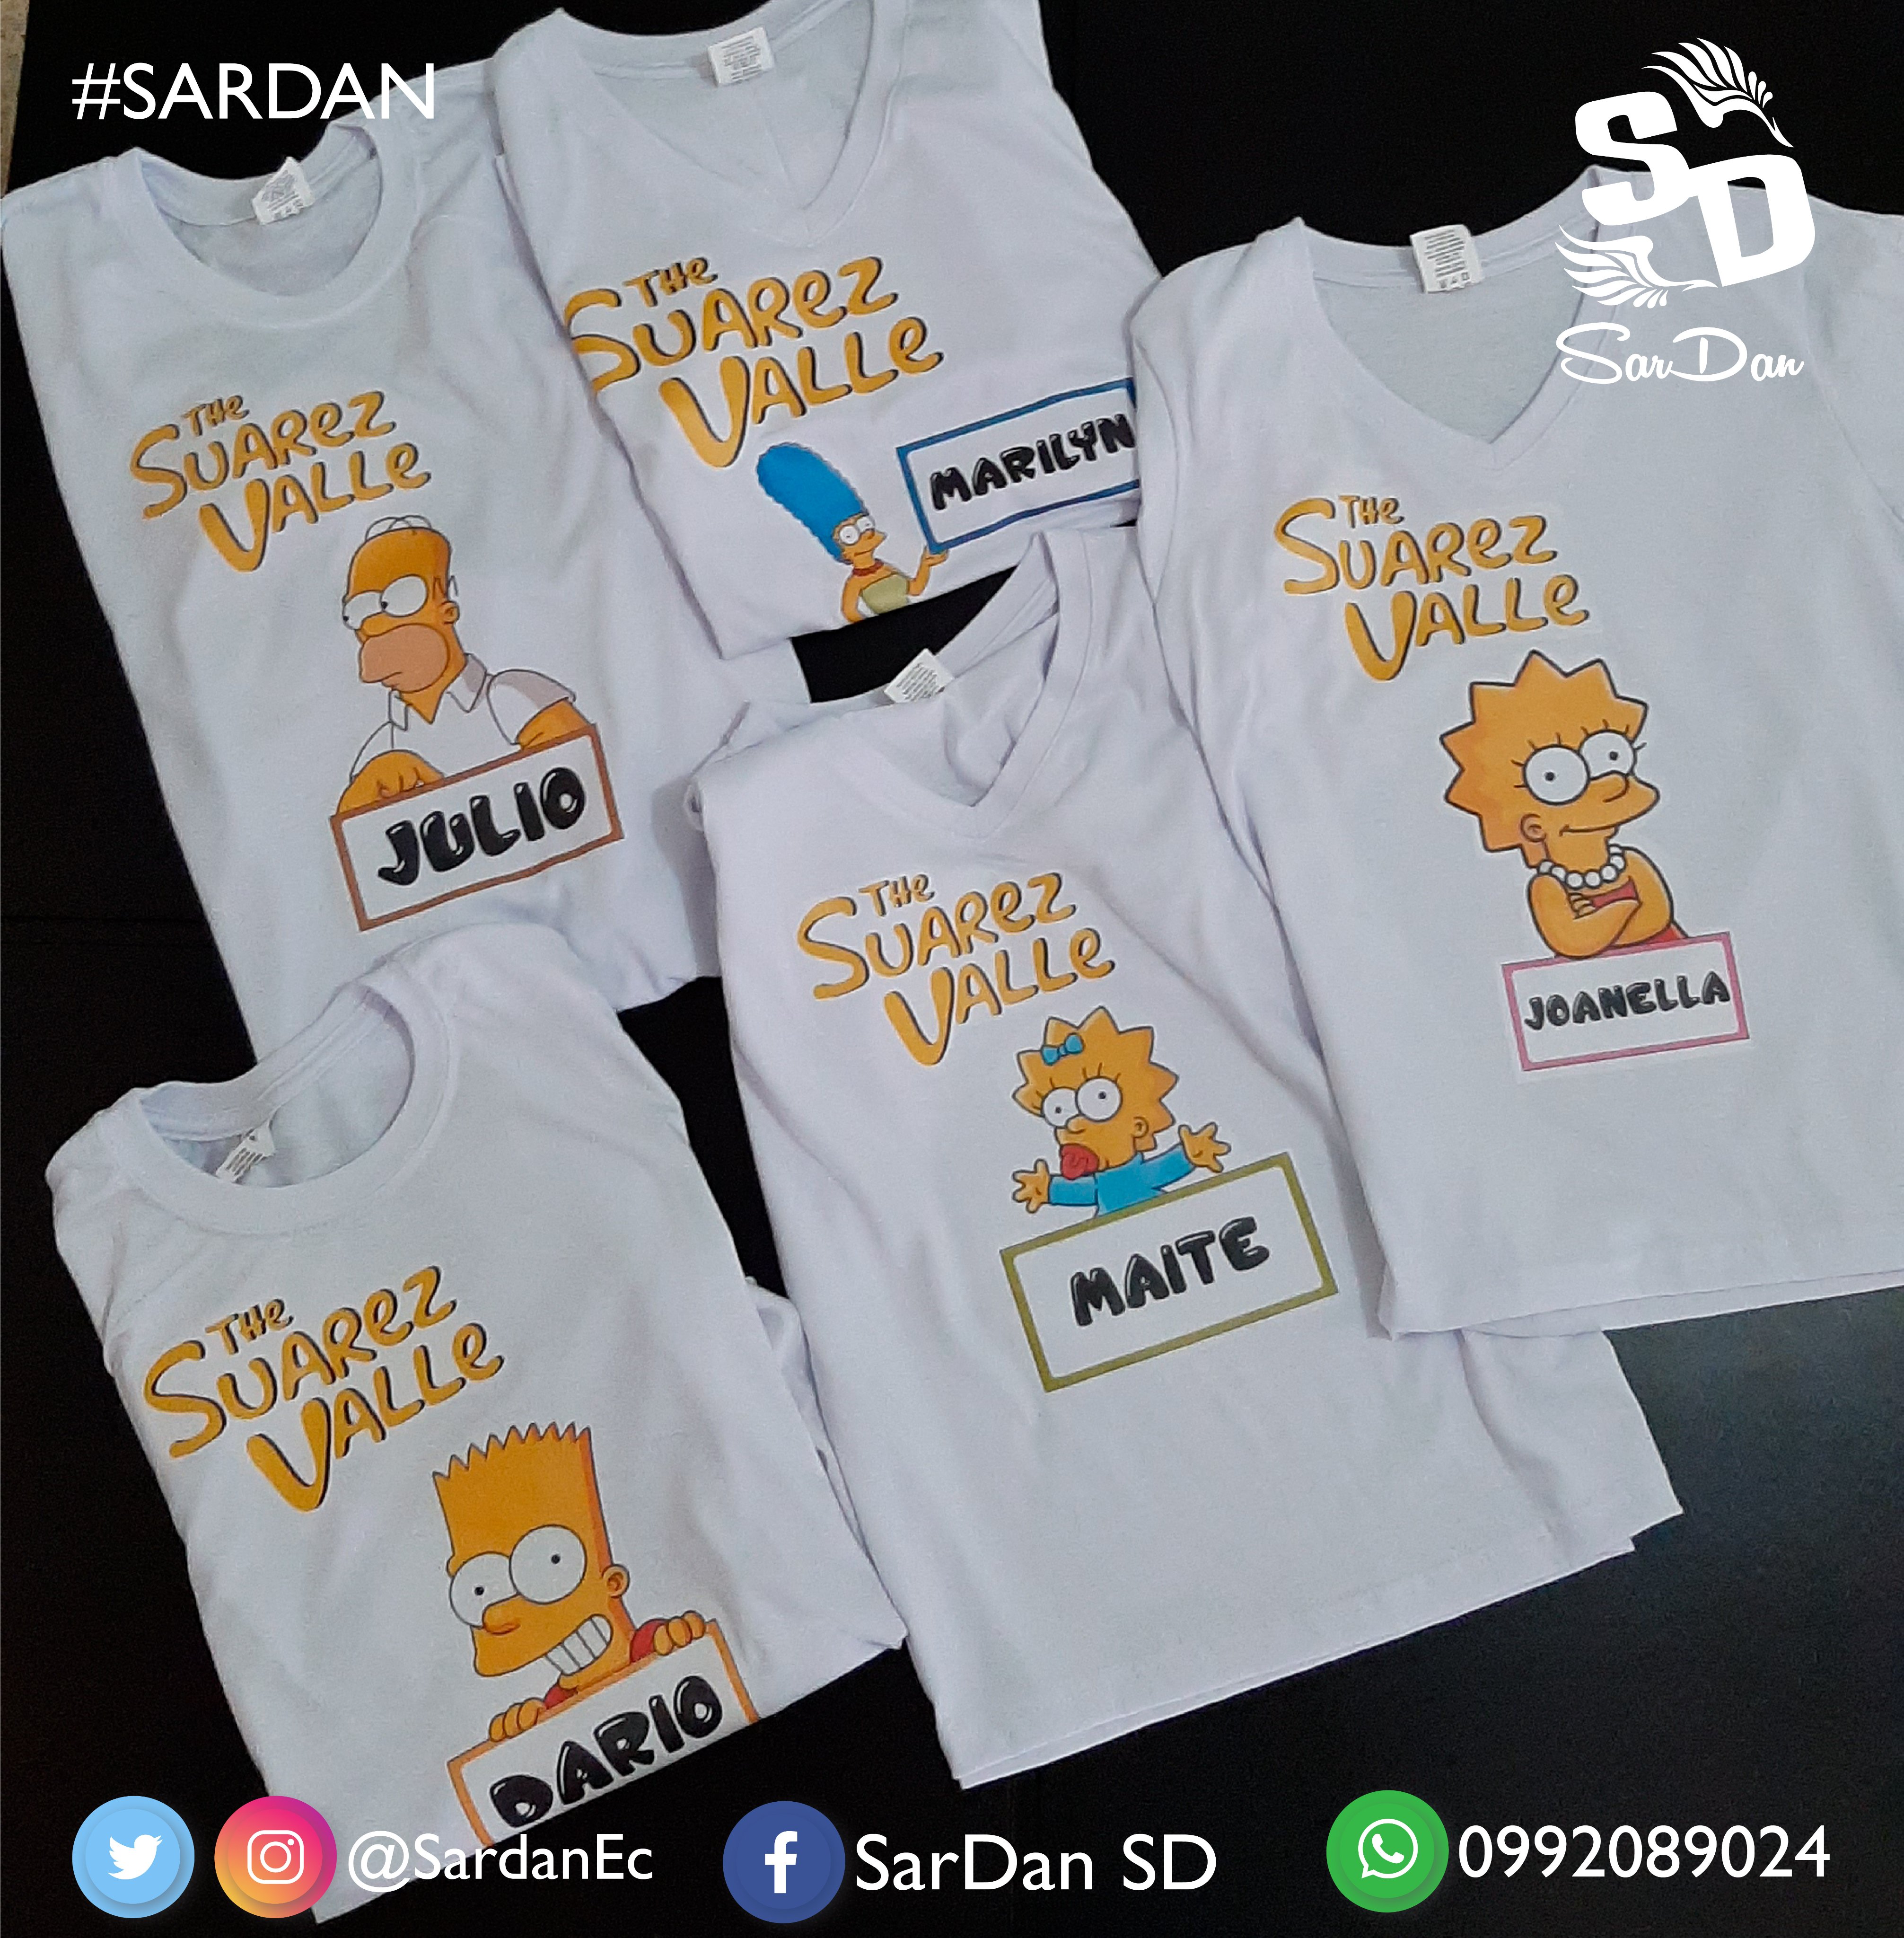 SarDan SD on Twitter: SIMPSONS Camisetas Familiares Diseño 100% Personalizado Realizado en transfer Haz tu pedido ;) min. 1 seman de anticipación #TheSimpsons #Family https://t.co/5Igmcrc6sm" / Twitter